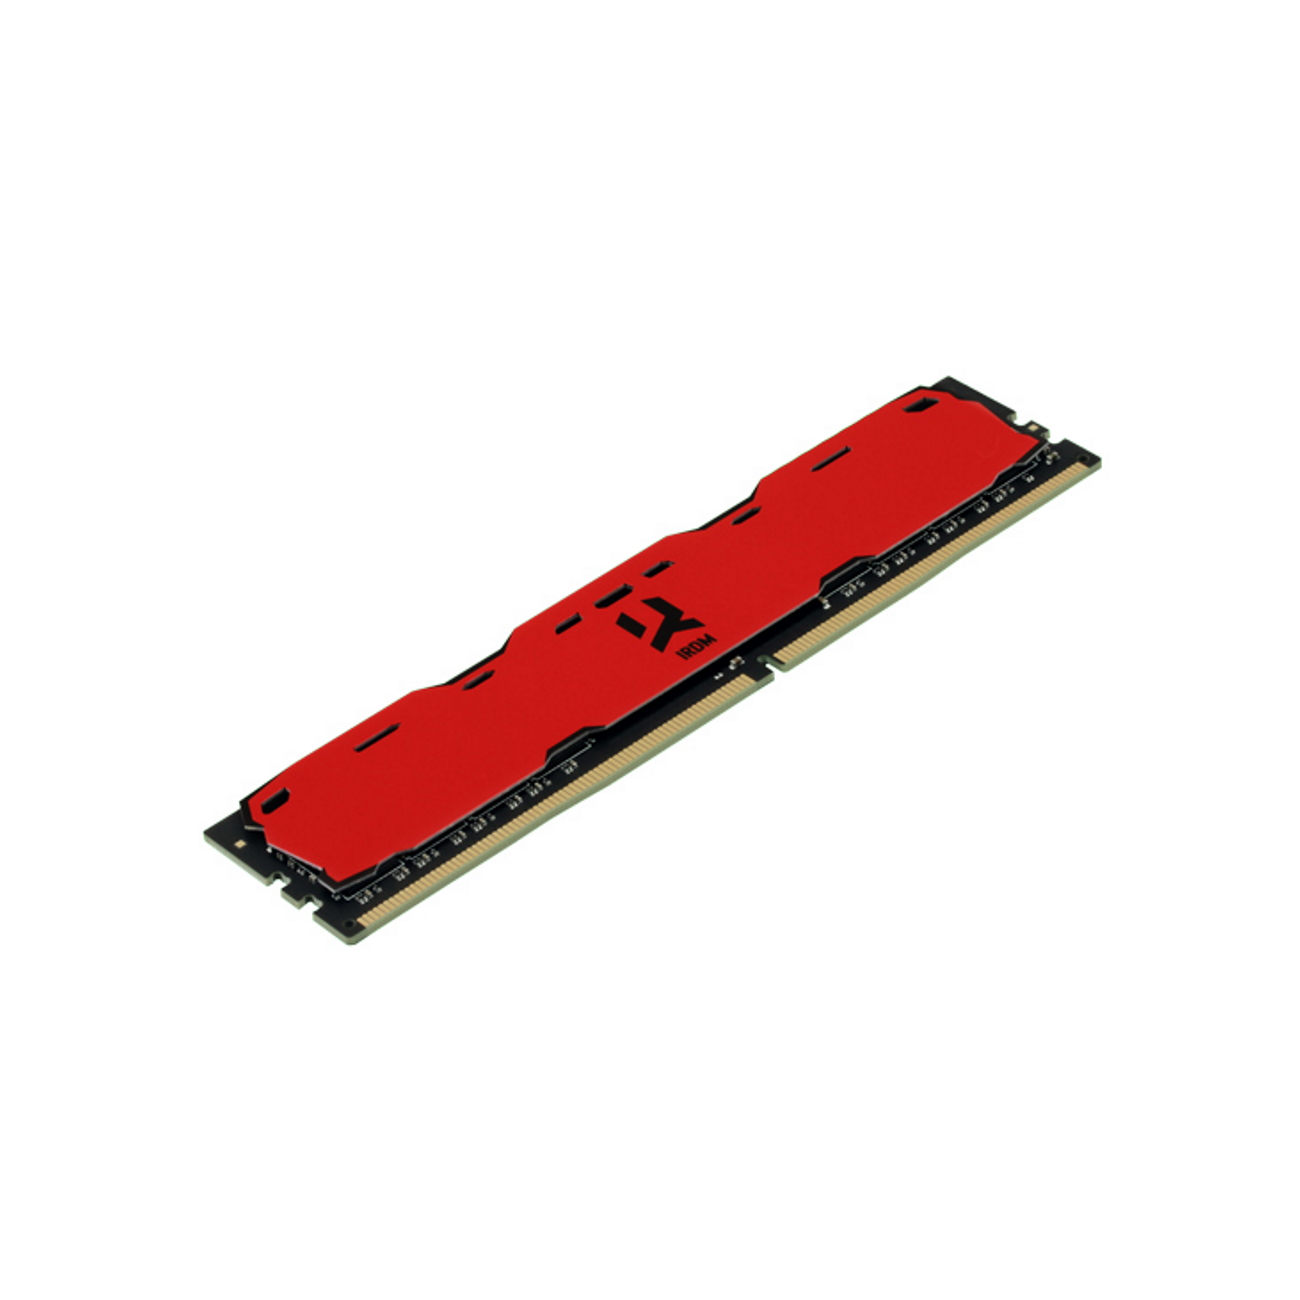 RED DDR4 CL15 GOODRAM 2400MHz GB 4 IRDM Arbeitsspeicher 4GB DIMM SR